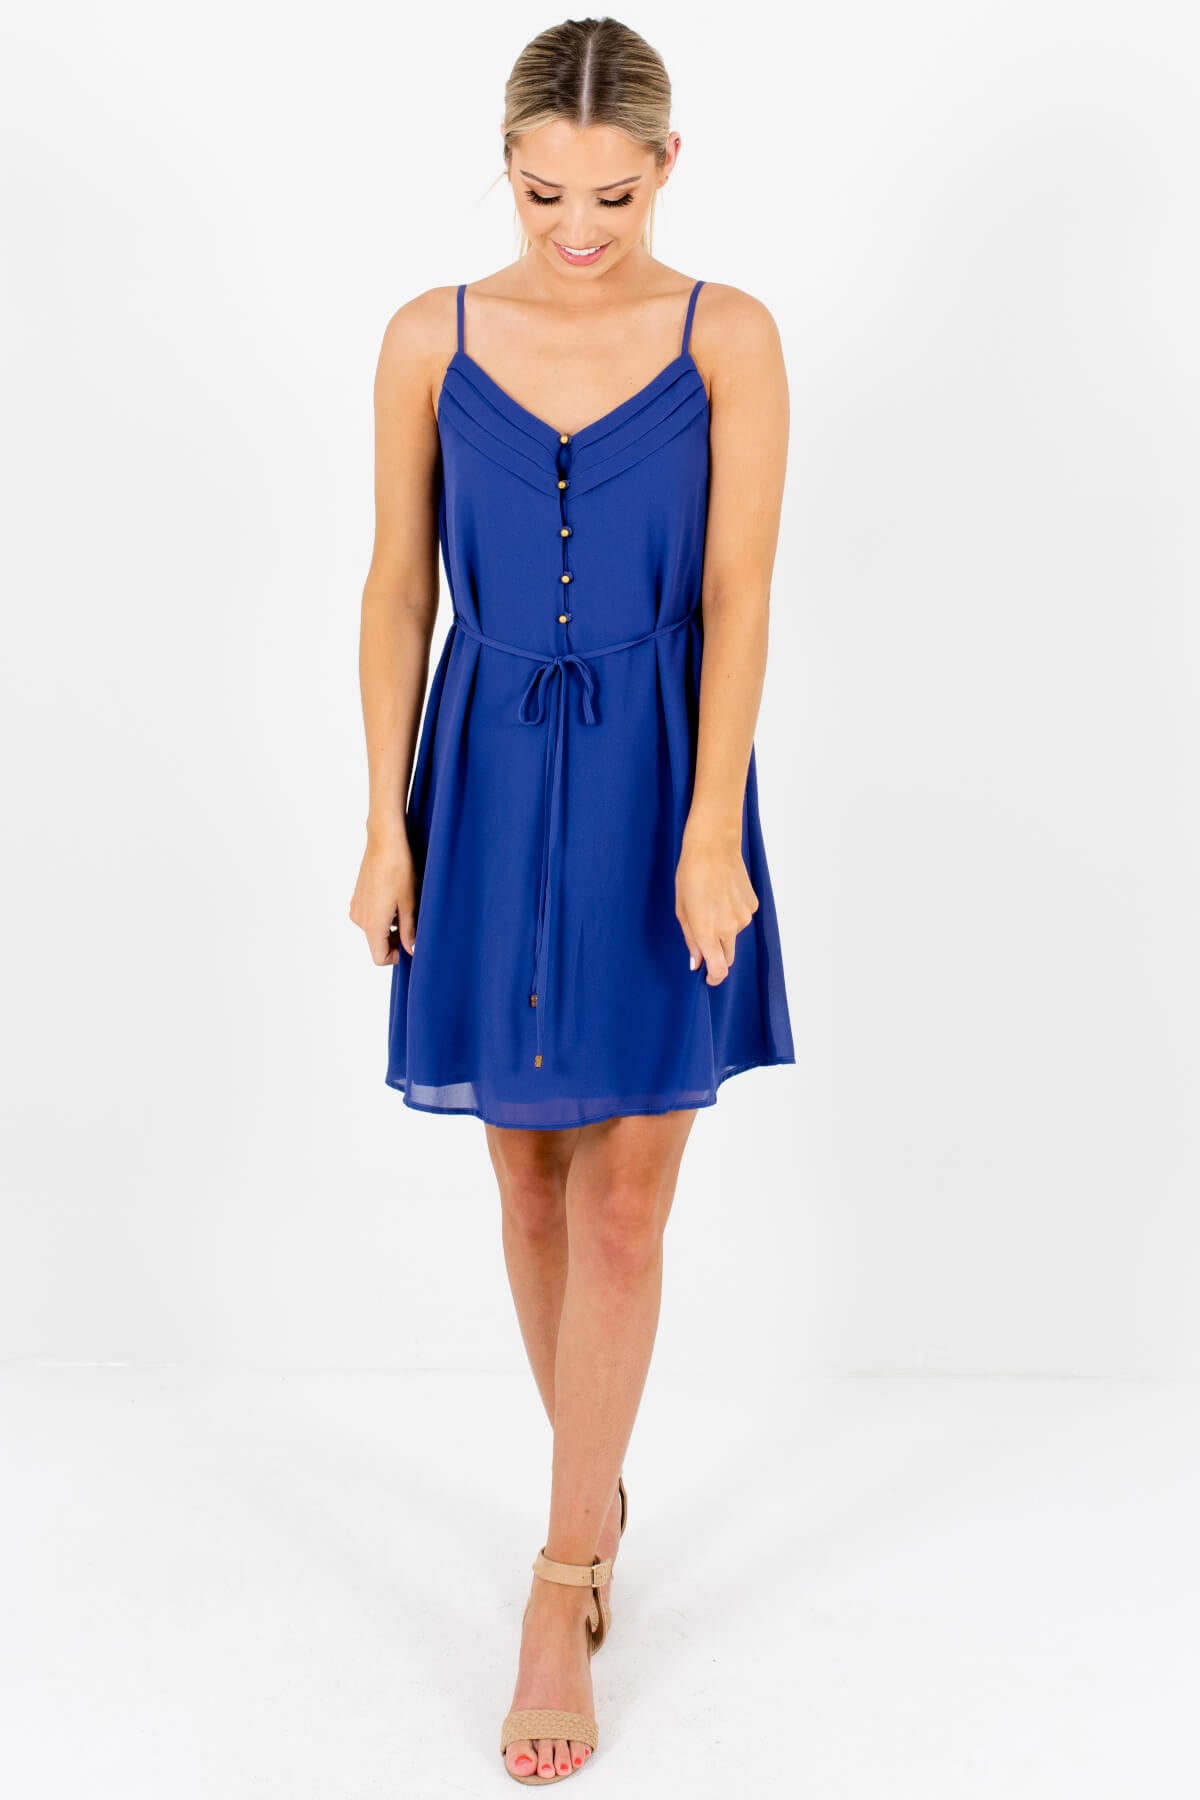 Periwinkle Blue Mini Dresses Affordable Online Boutique